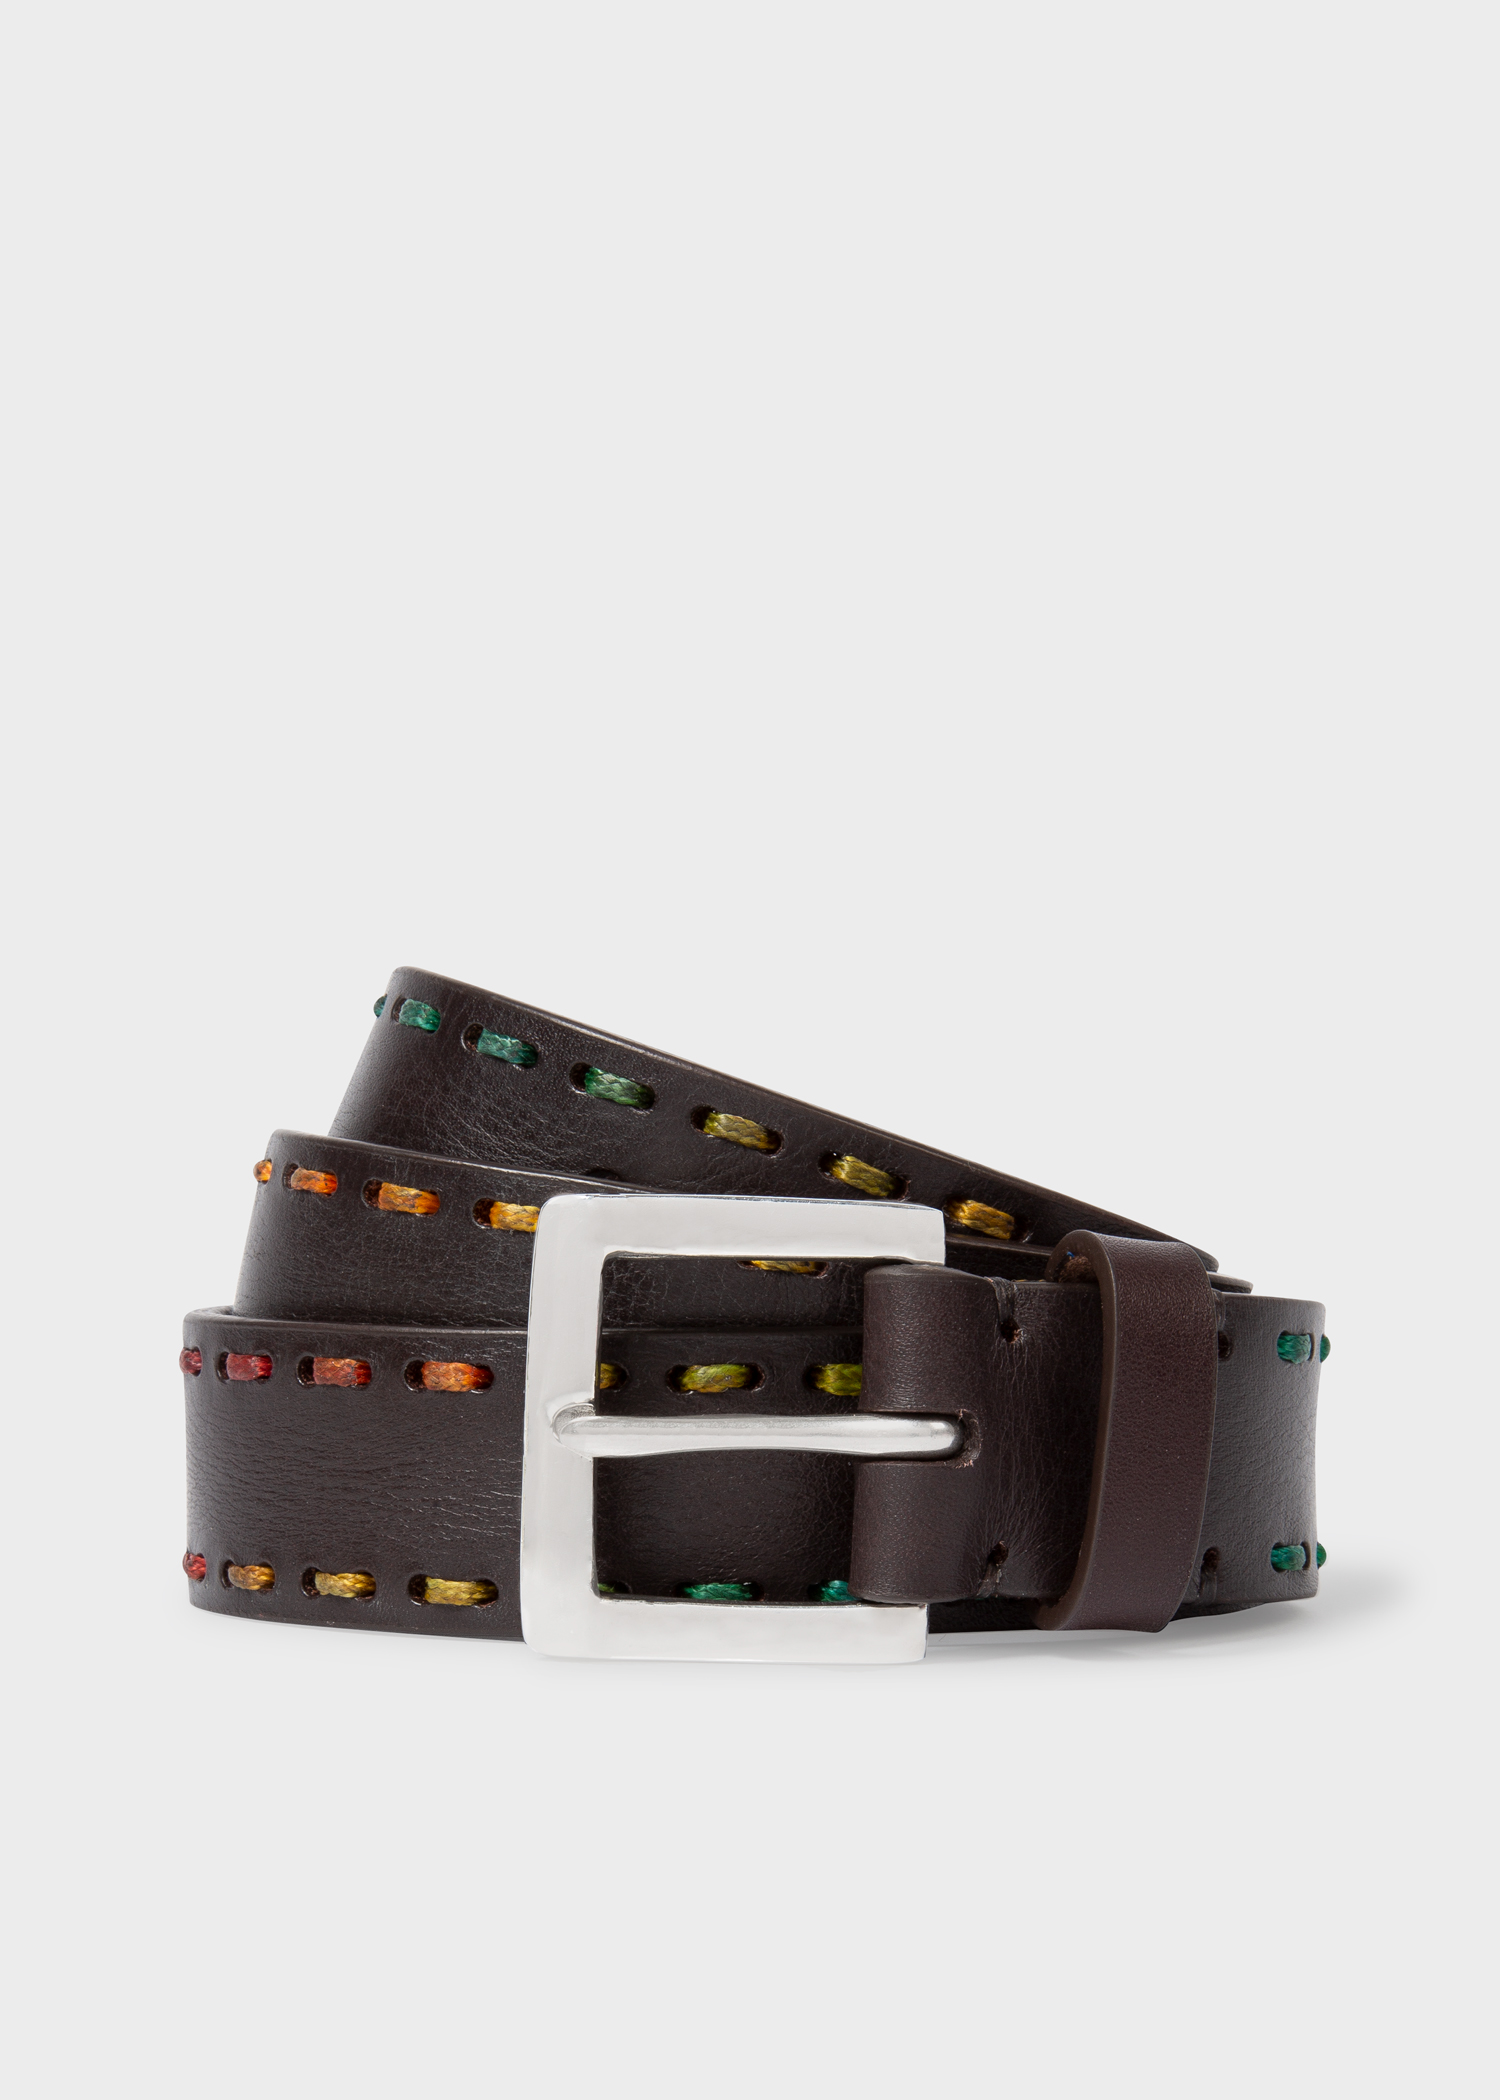 폴 스미스 벨트 Paul Smith Mens Brown Leather Belt With Multi-Coloured Stitching